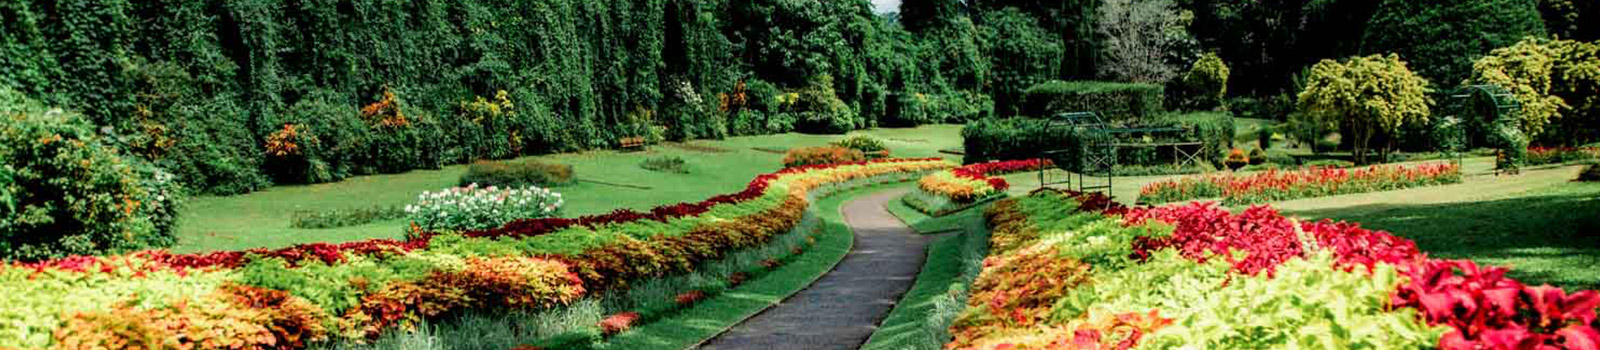 Royal Botanic Gardens Department Of